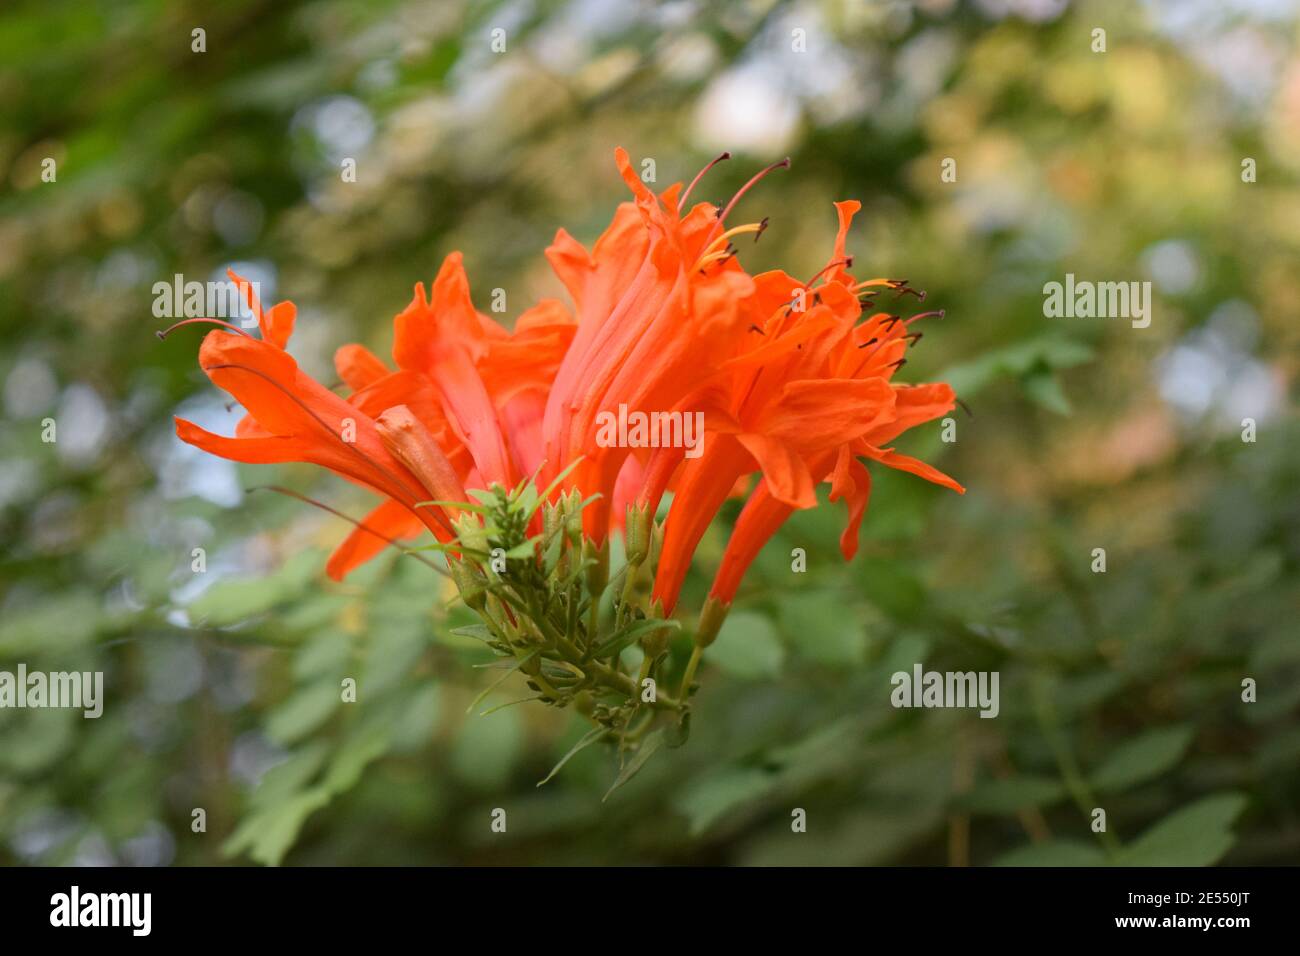 Cianciolo o tecoma capensis con fiori d'arancio. Tecoma capensis (nome comune di Cape honeysuckle) è una specie di pianta fiorente della f Foto Stock